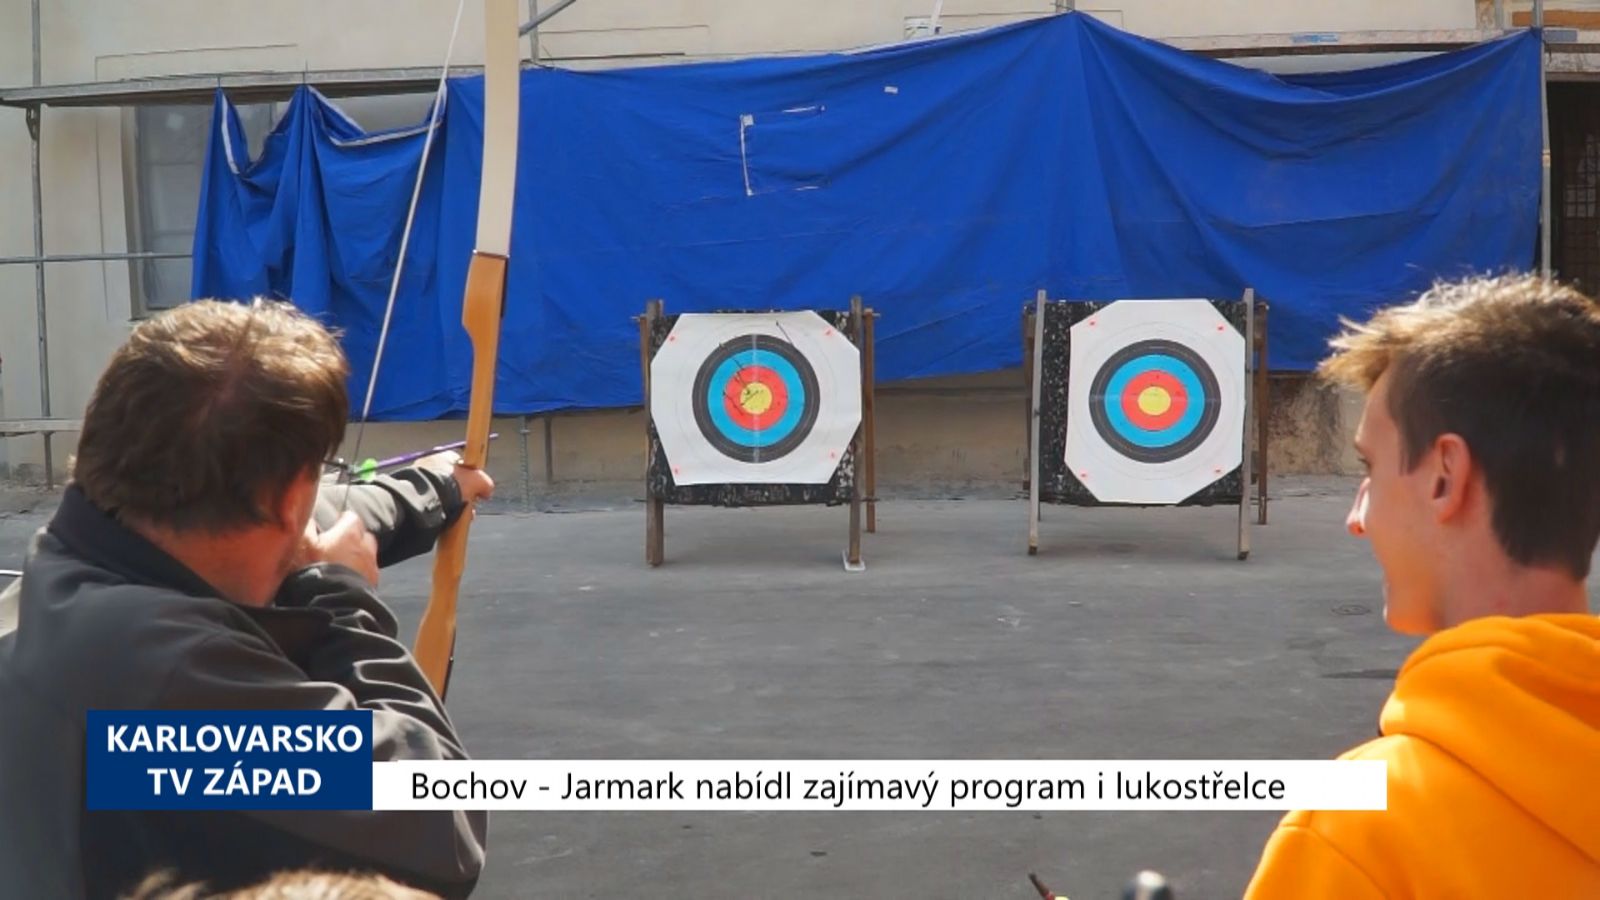 Bochov: Jarmark nabídl zajímavý program i lukostřelce (TV Západ)